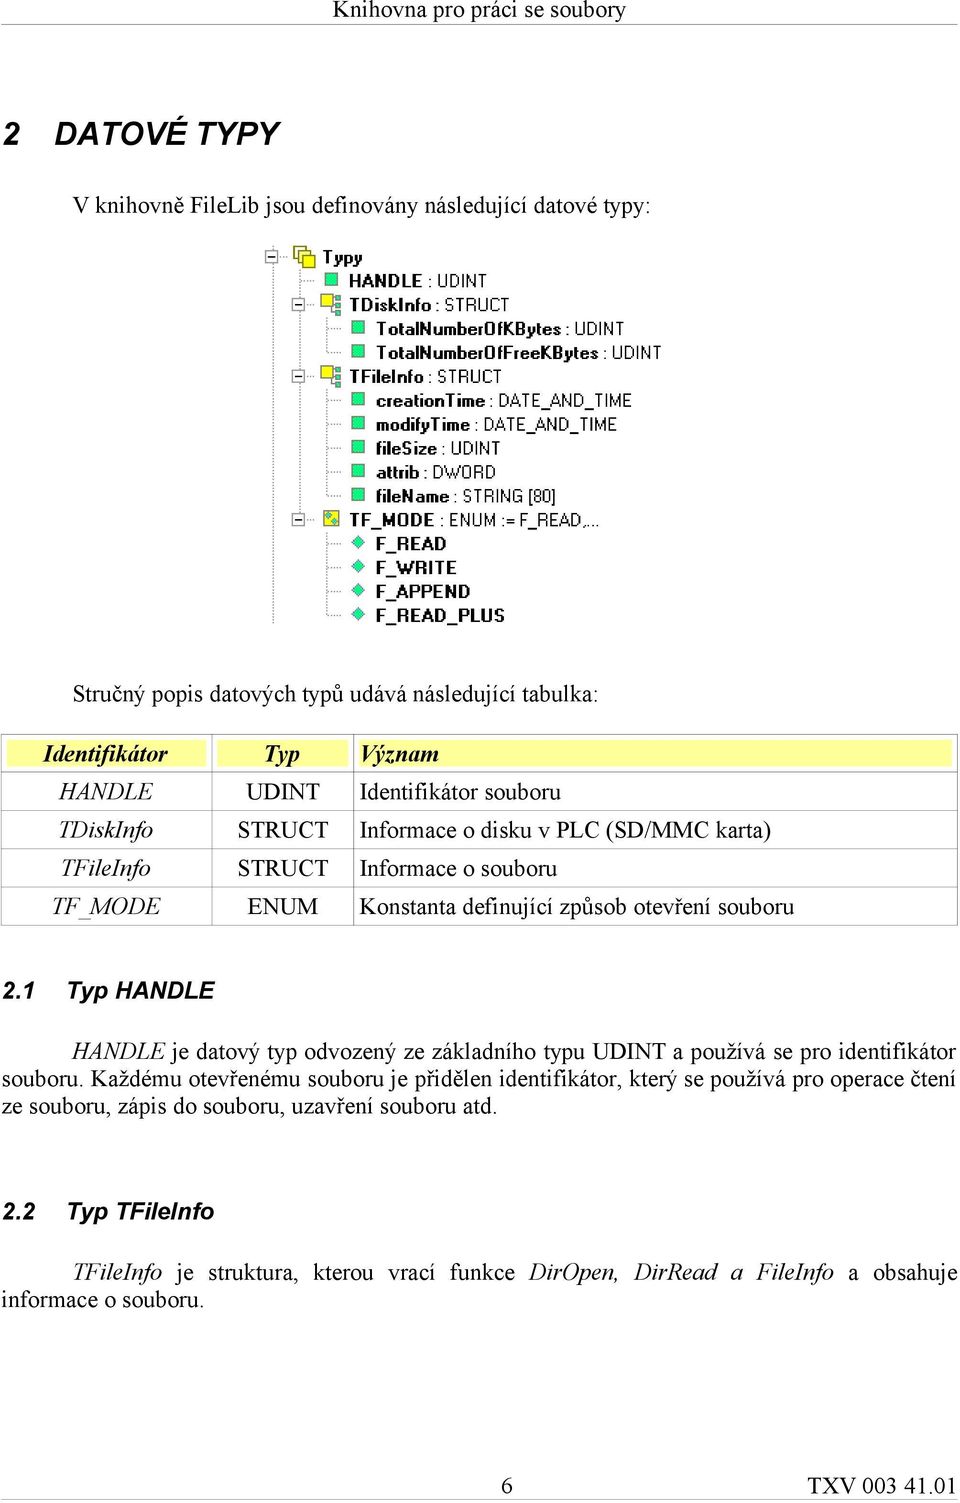 1 Typ HANDLE HANDLE je datový typ odvozený ze základního typu UDINT a používá se pro identifikátor souboru.